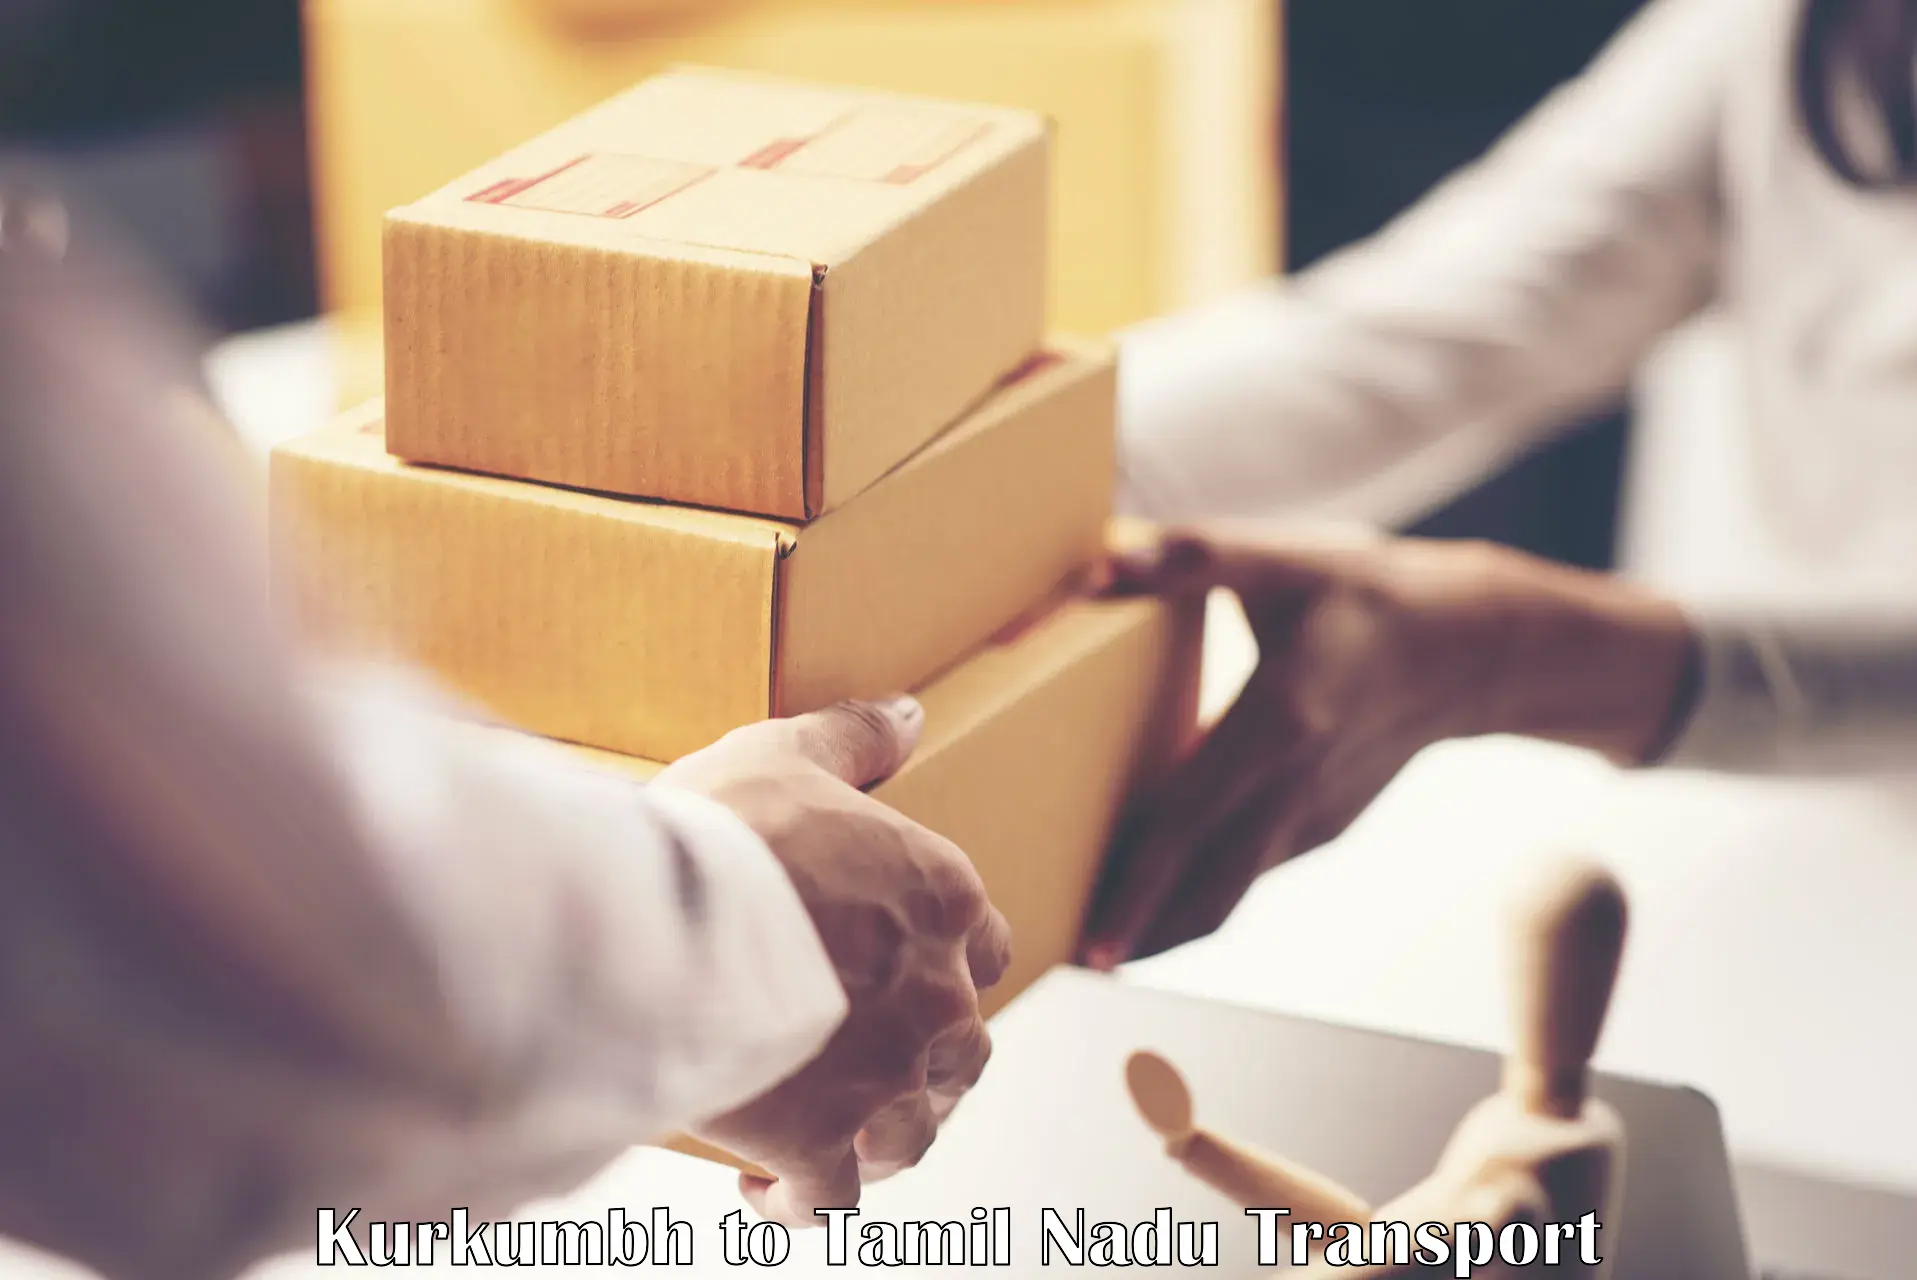 Shipping partner Kurkumbh to Thoothukudi